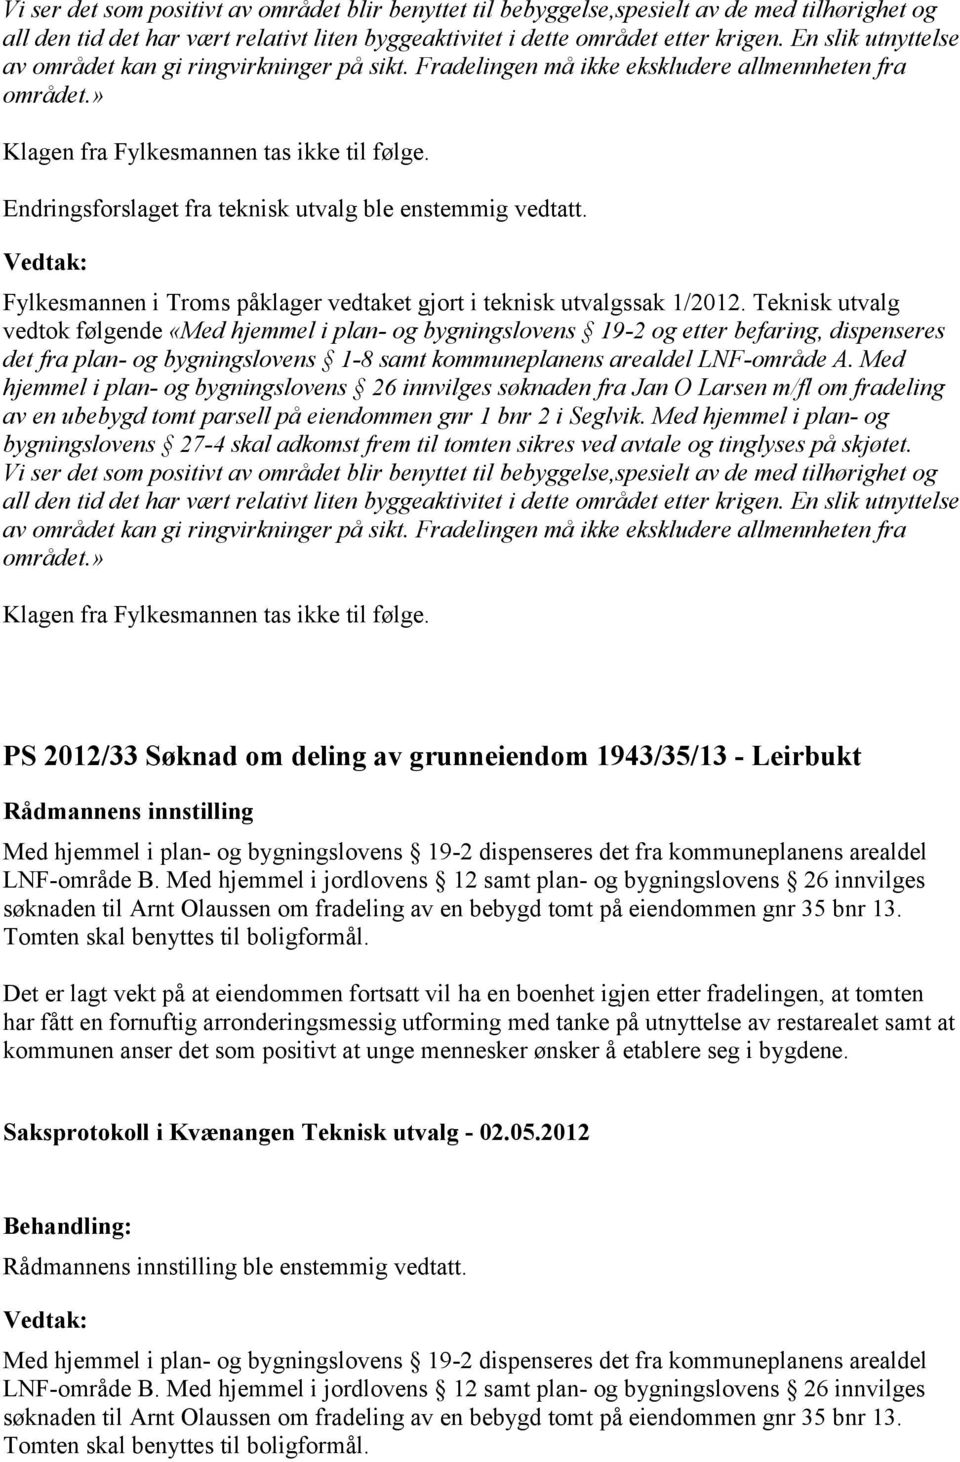 Endringsforslaget fra teknisk utvalg ble enstemmig vedtatt. Fylkesmannen i Troms påklager vedtaket gjort i teknisk utvalgssak 1/2012.